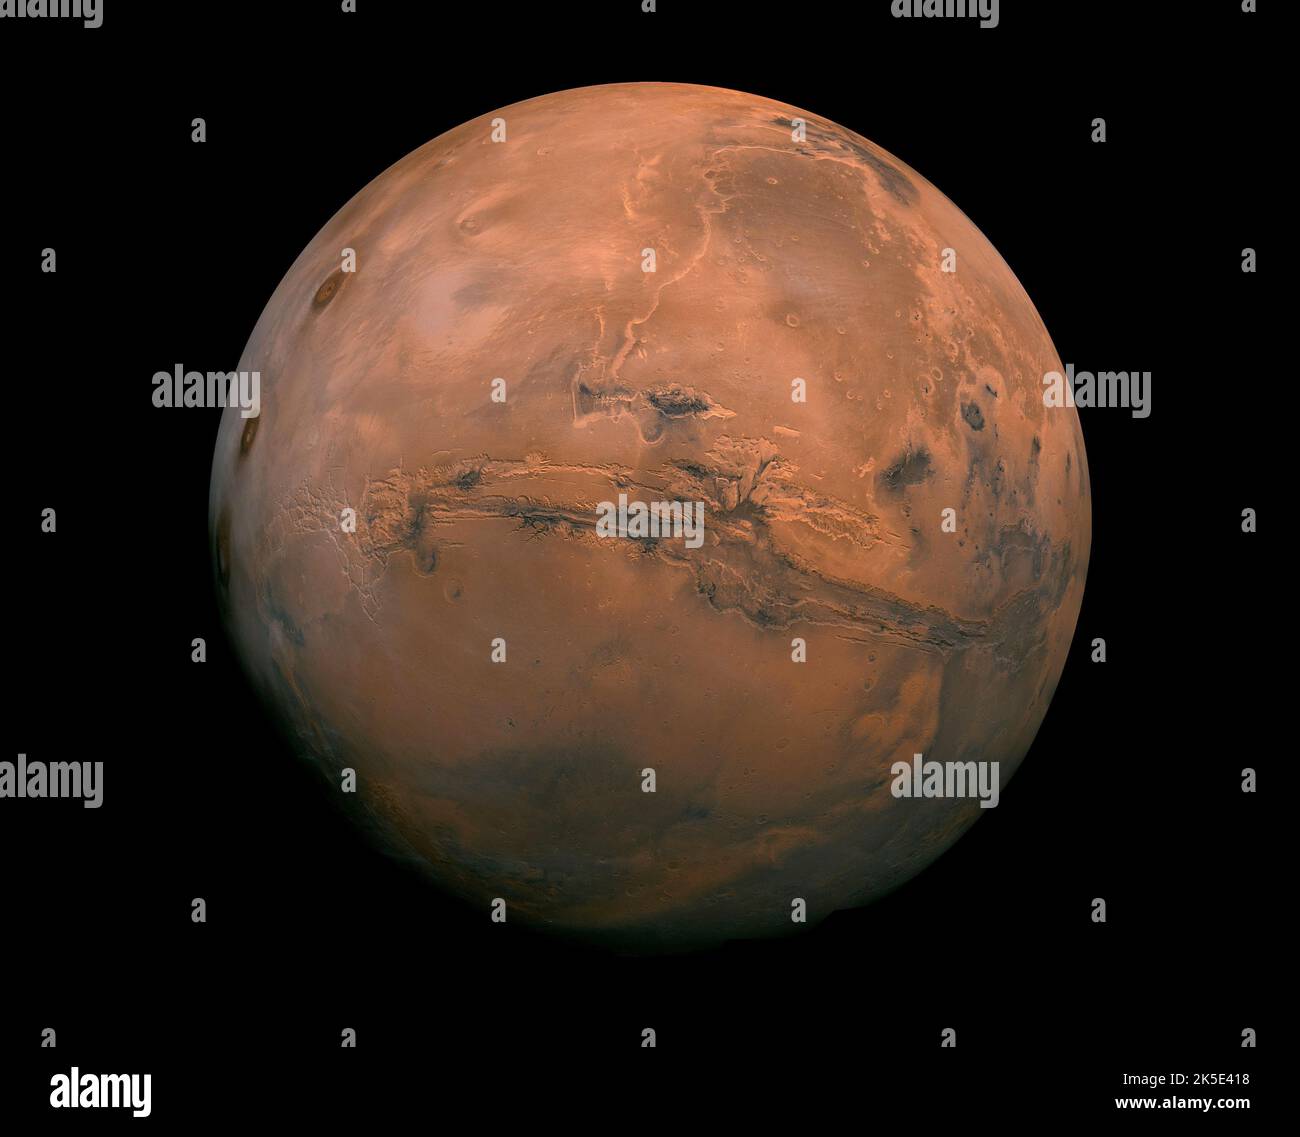 Der Planet Mars. Ein Mosaik der NASA-Bilder vom Mars, das die Valles Marineris-Hemisphäre des Mars zeigt, projiziert in eine Punktperspektive, eine Ansicht ähnlich der, die man von einem Raumschiff aus sehen würde. Die Entfernung des Betrachters ist etwa 2.500 Kilometer von der Marsoberfläche vorgesehen. Bild aus über 100 Viking Orbiter-Bildern des Mars. Eine optimierte Version eines Originalbildes der NASA. Quelle: NASA, Stockfoto